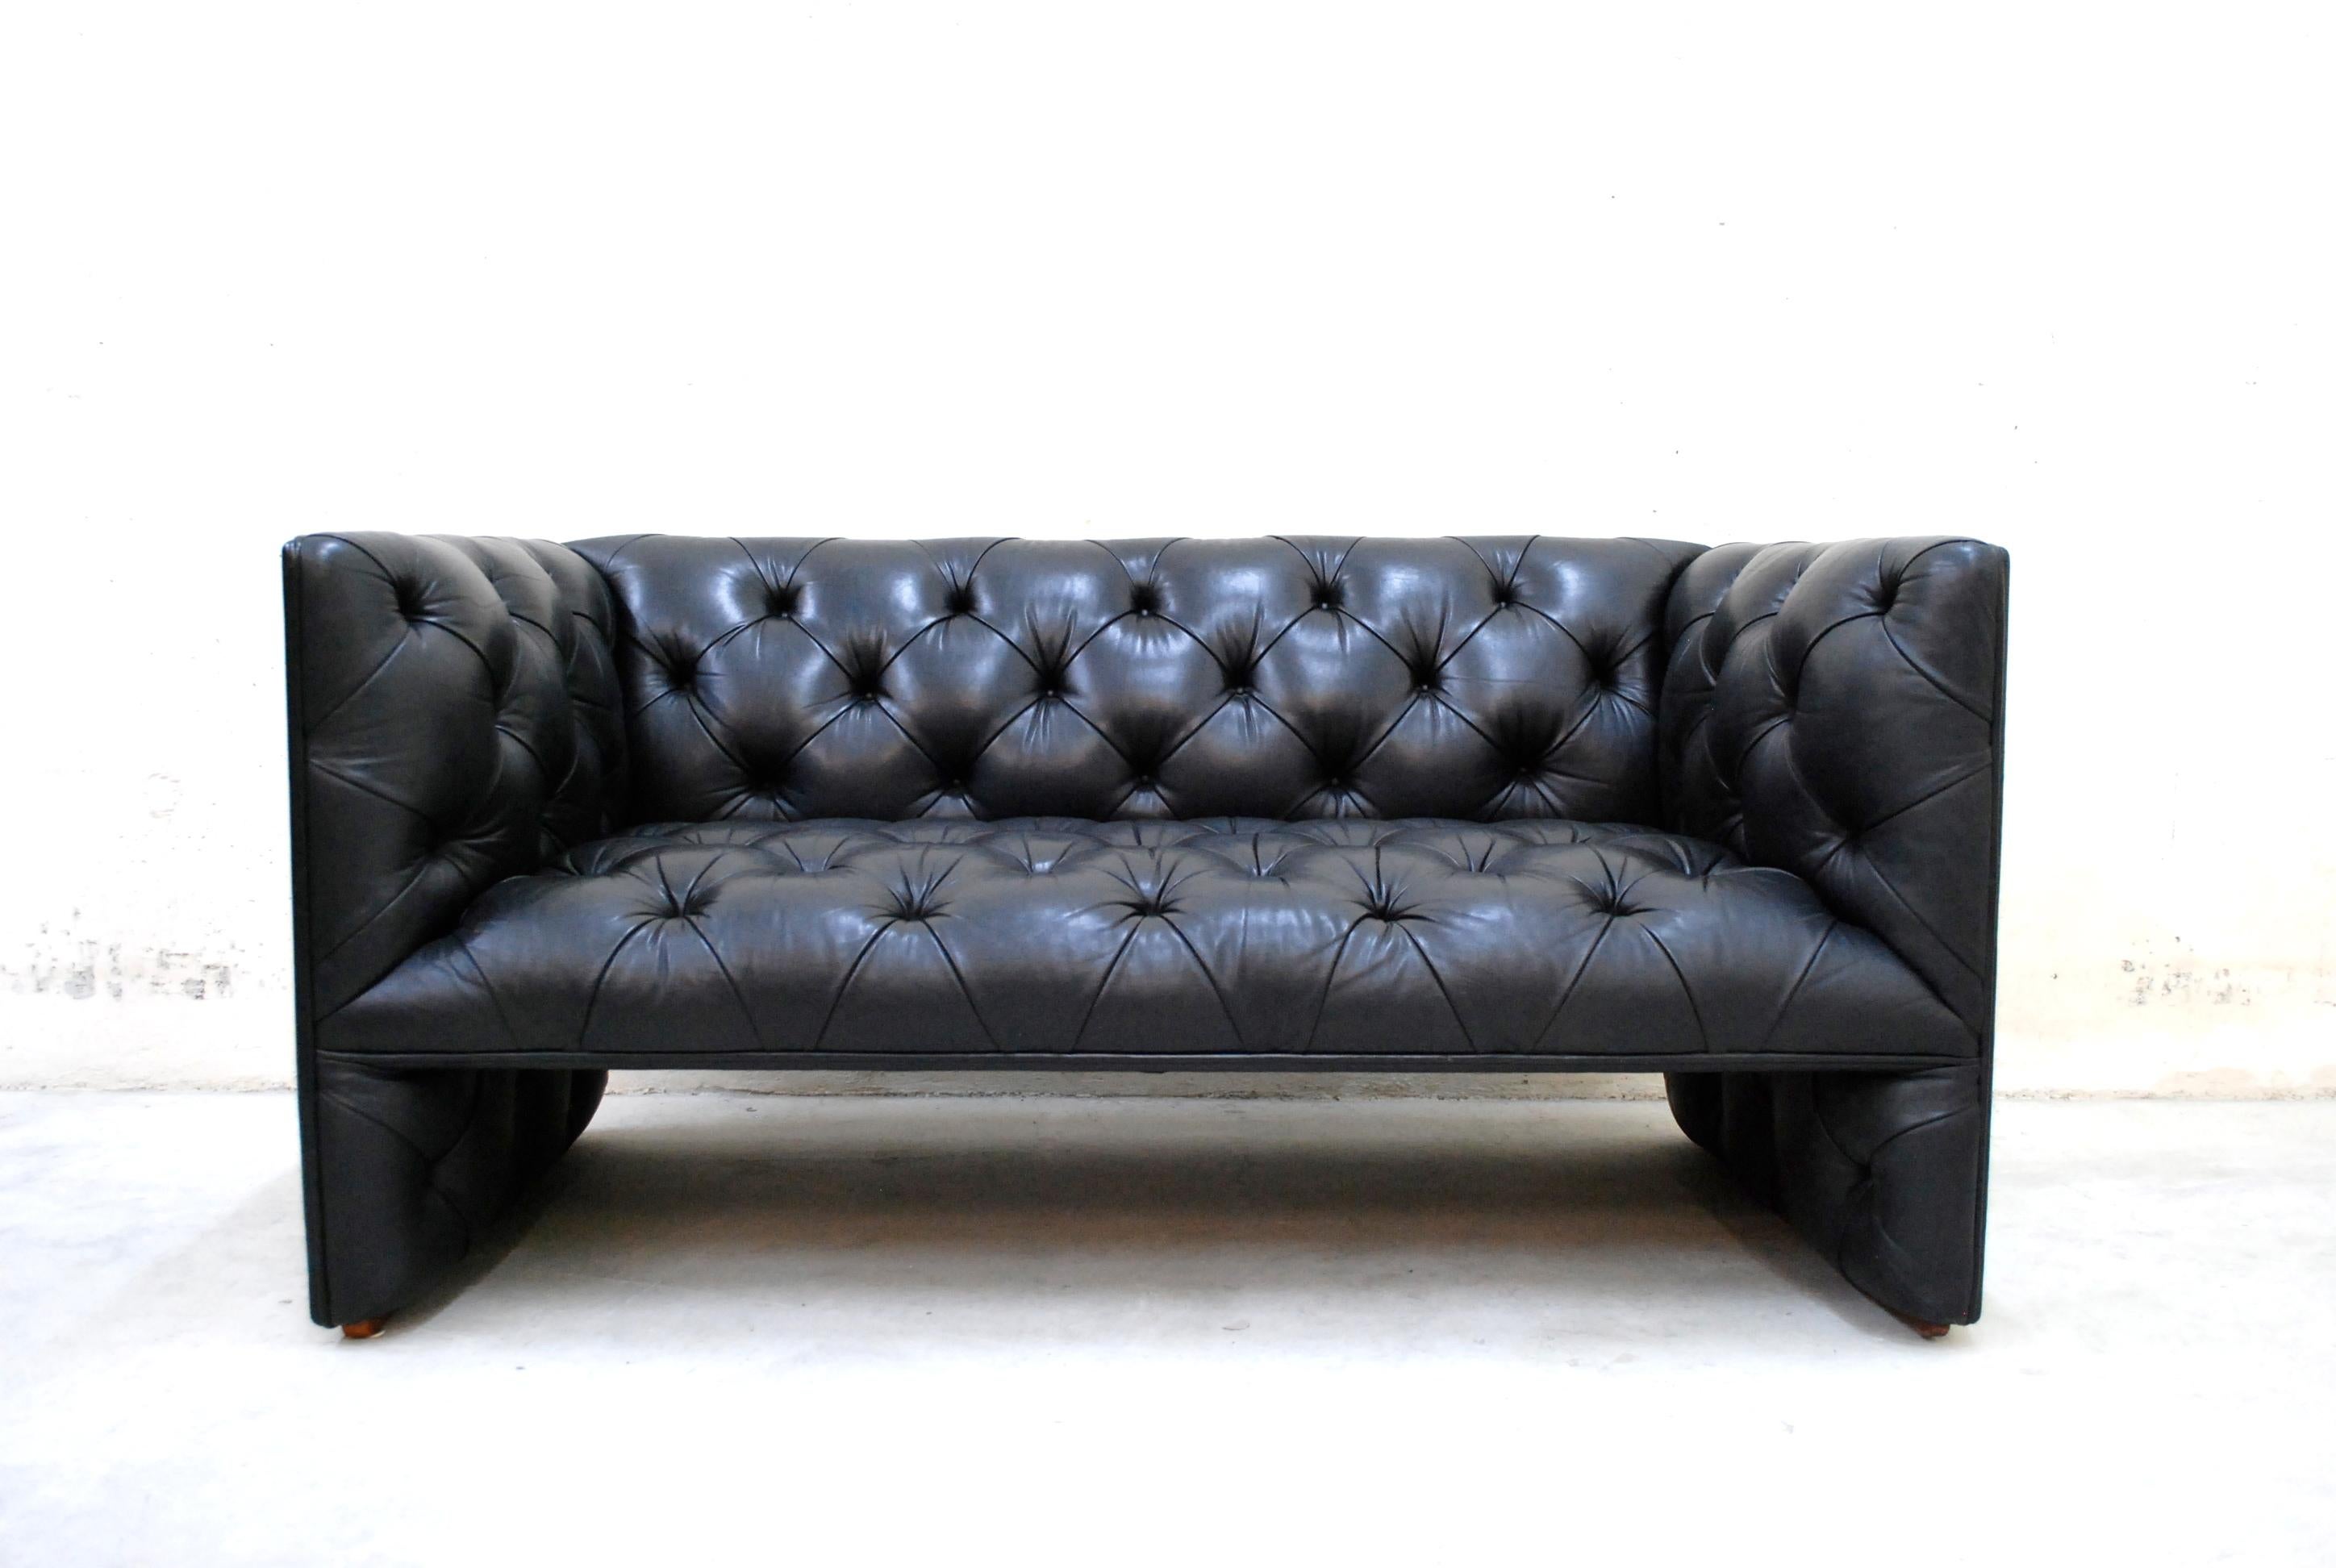 Dieses Ledersofa und -sofa wurde von Edward B. Tuttle für Wittmann entworfen, 1981.
Es ist die frühe 1. Version von 1990.
Die erste Version hat unter dem Sitz auch das getuftete Leder.
Es ist eine moderne Interpretation des klassischen